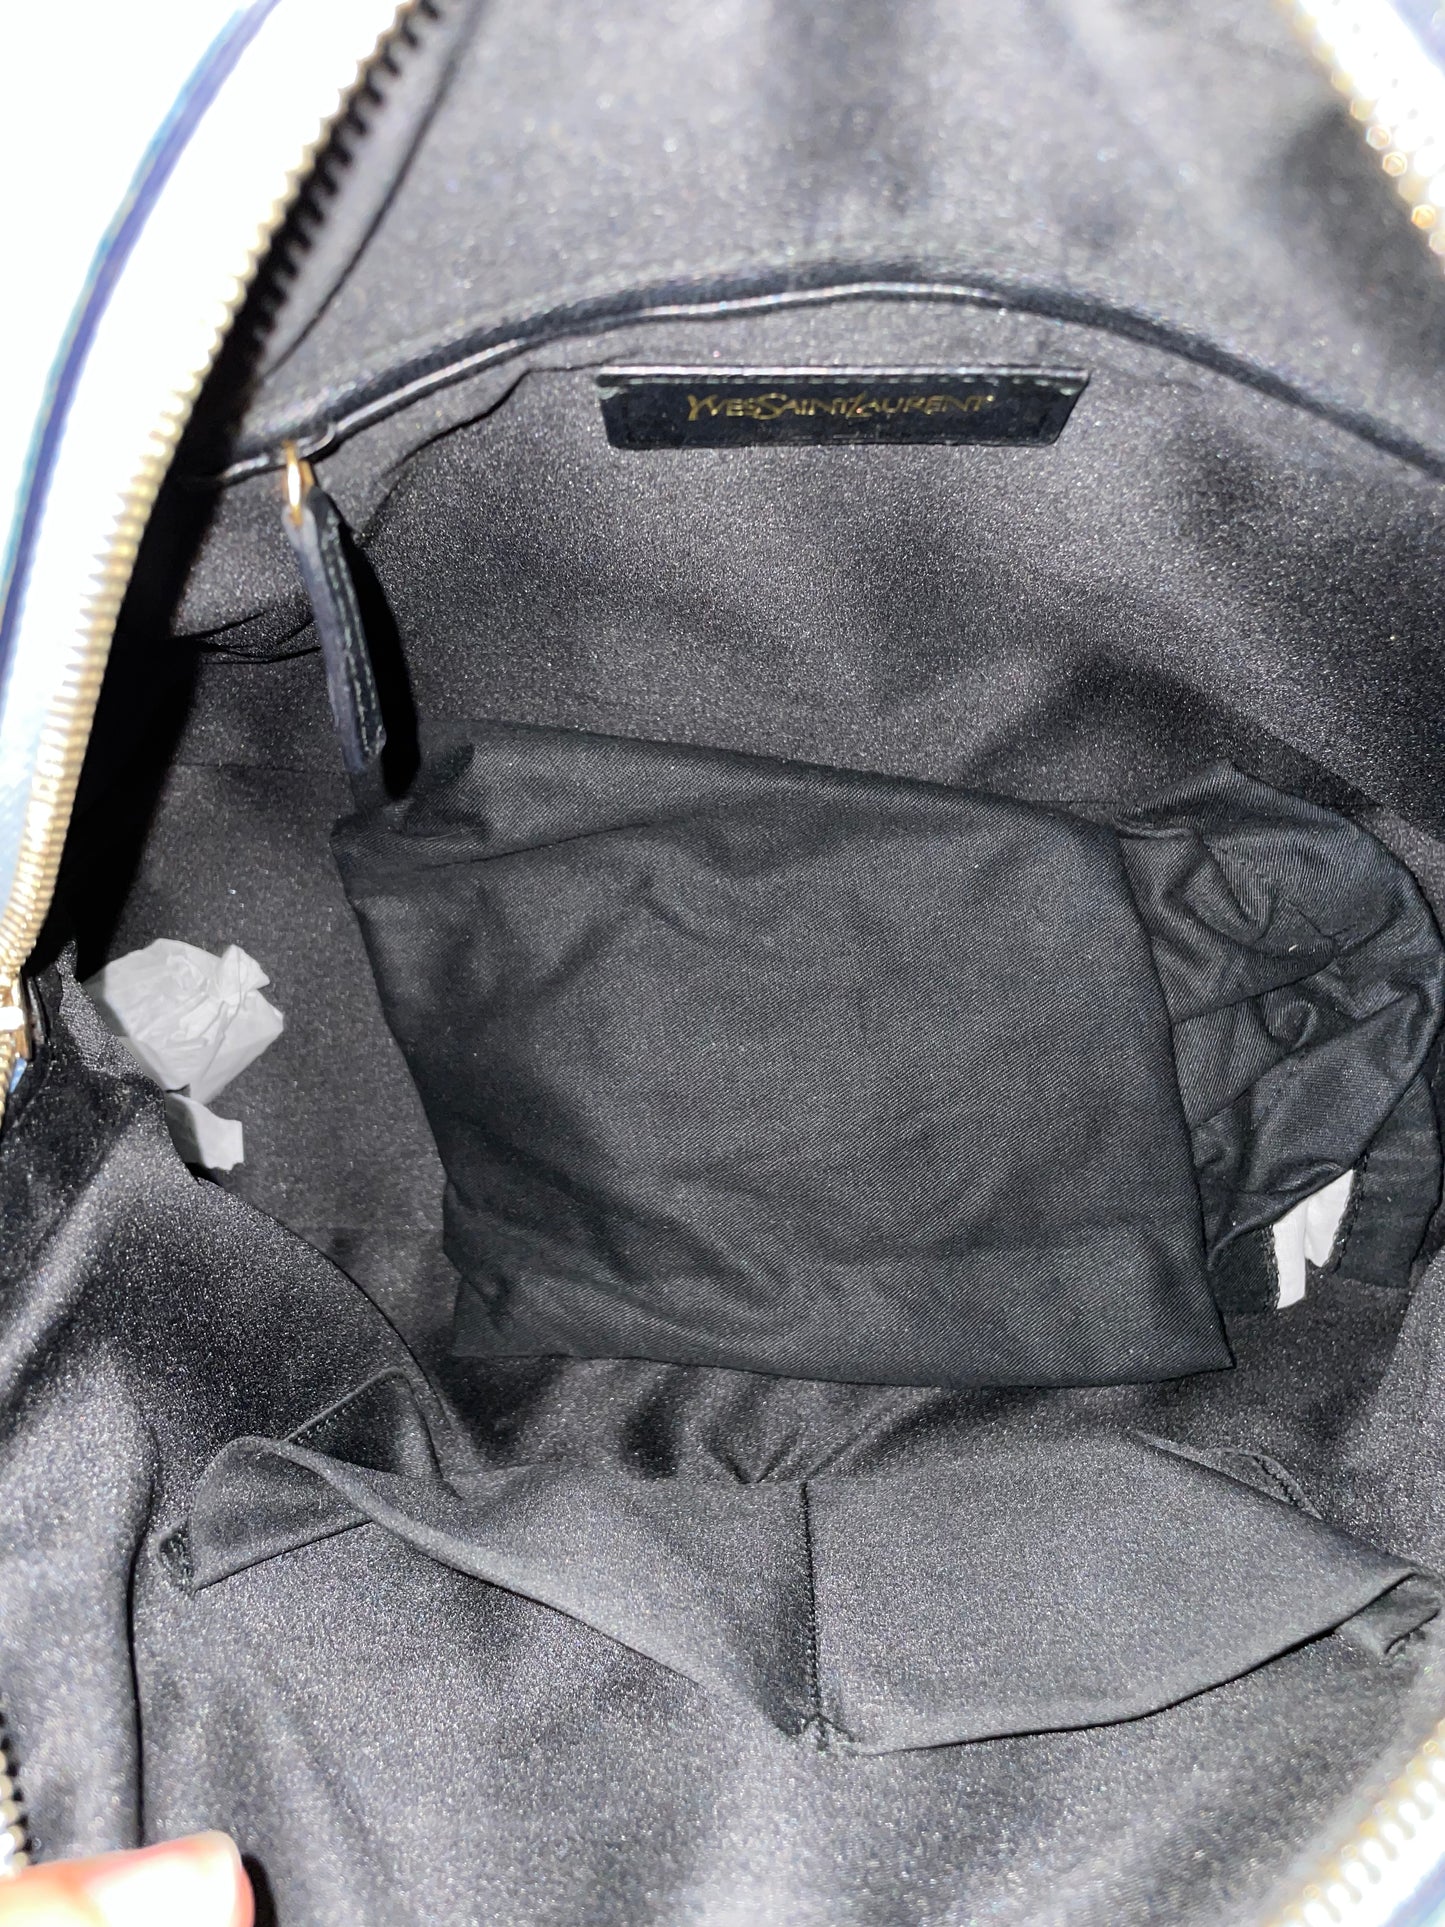 Yves Saint Laurent baby blue leather muse shoulder bag